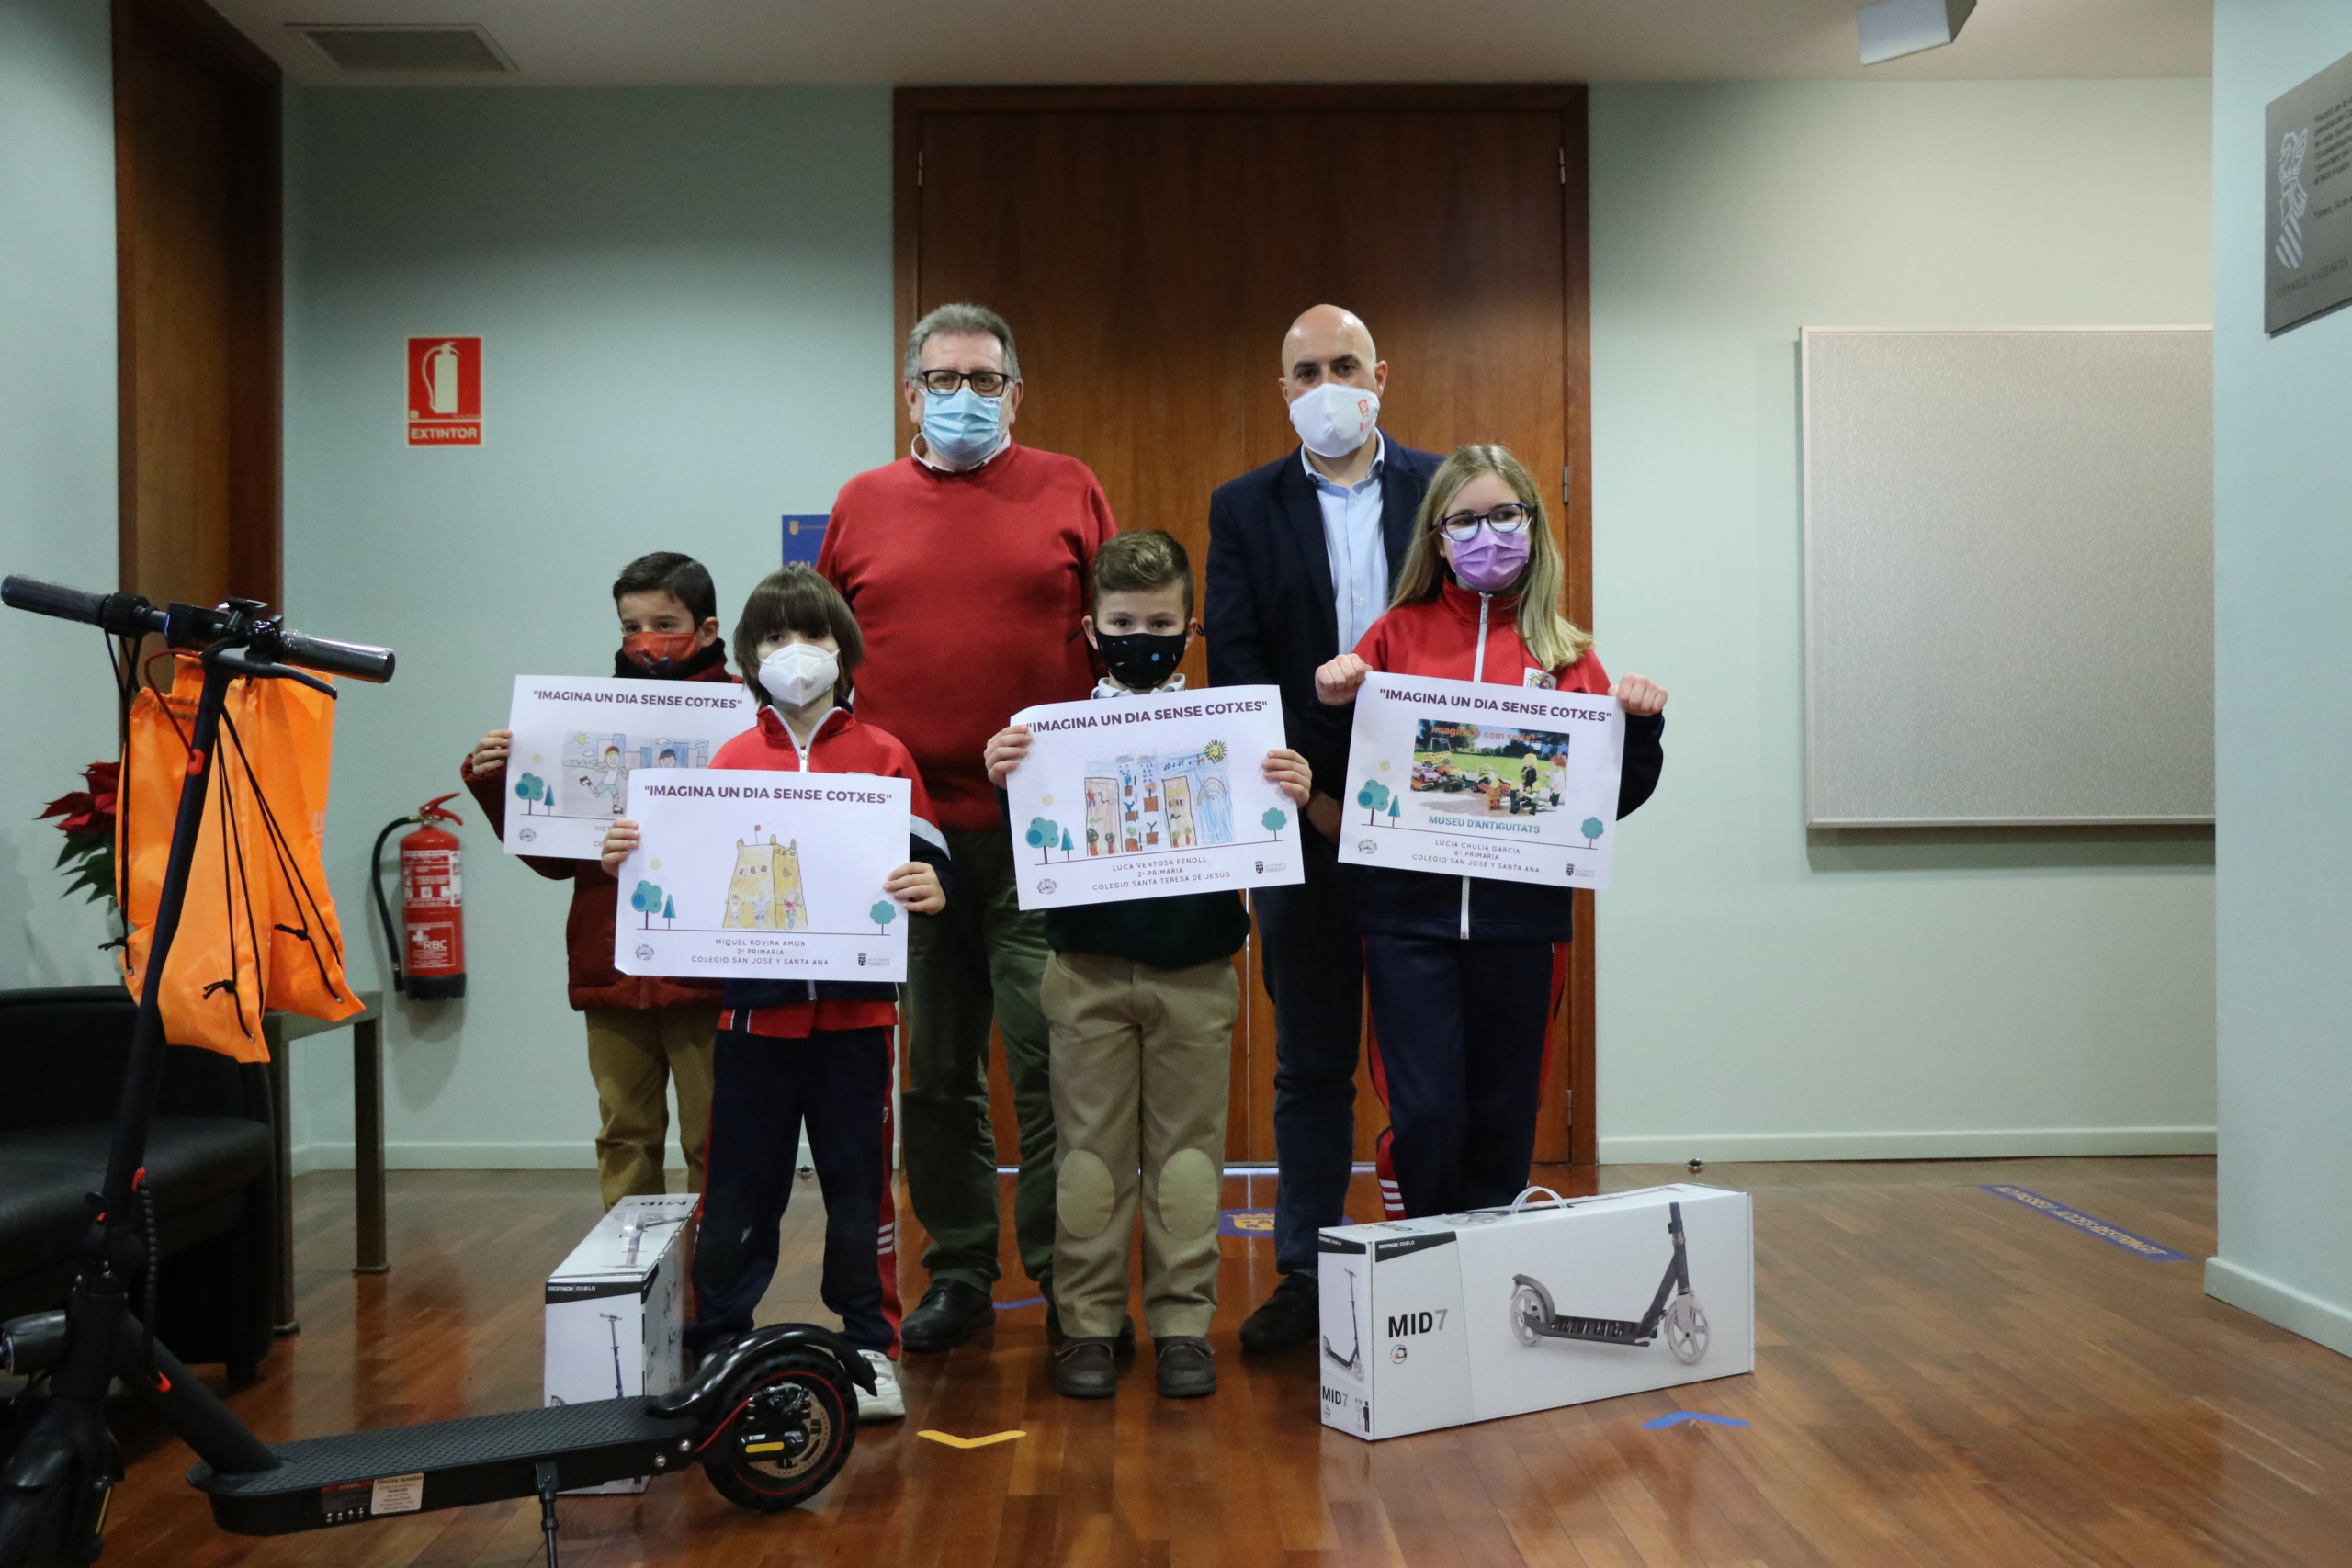 Torrent premia als guanyadors del concurs infantil de dibuix i fotografia ‘Imagina un dia sense cotxes’